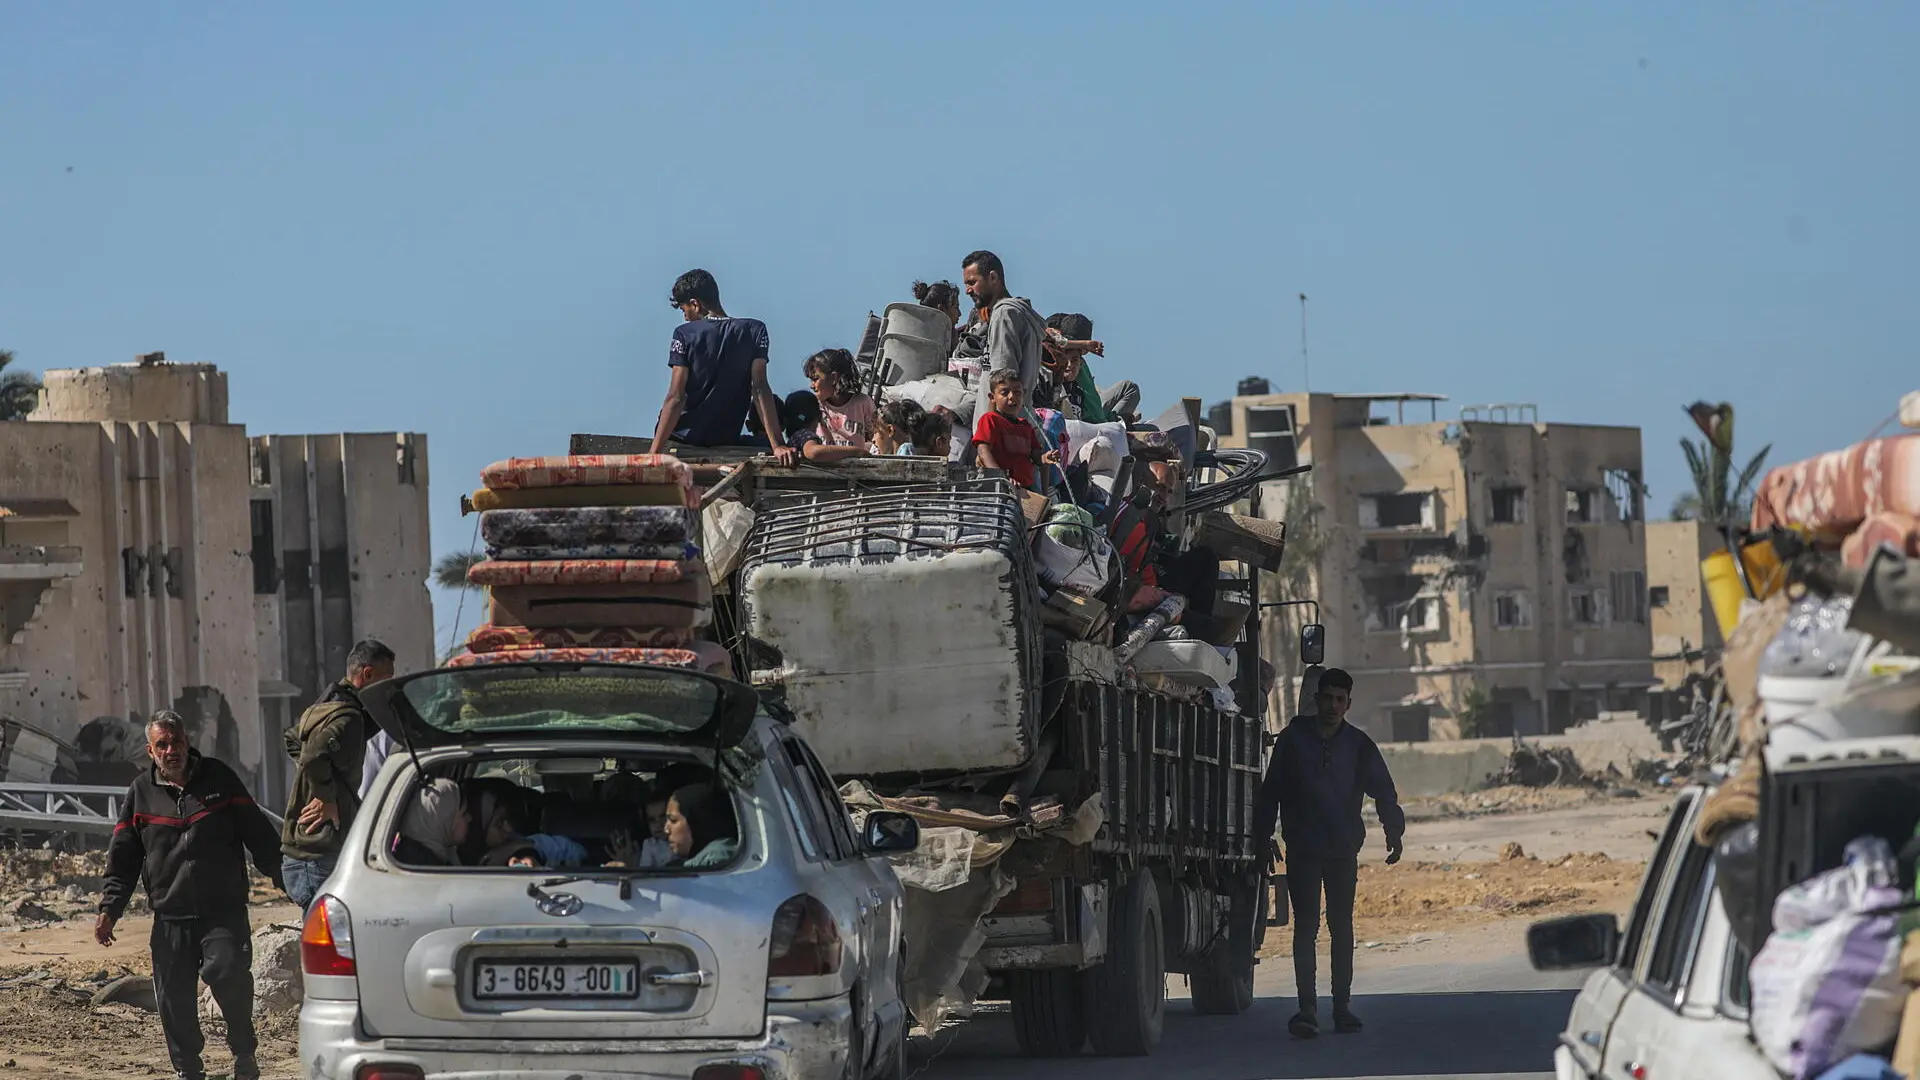 El cierre de Rafah obliga a los palestinos a huir a zonas masificadas y sin servicios